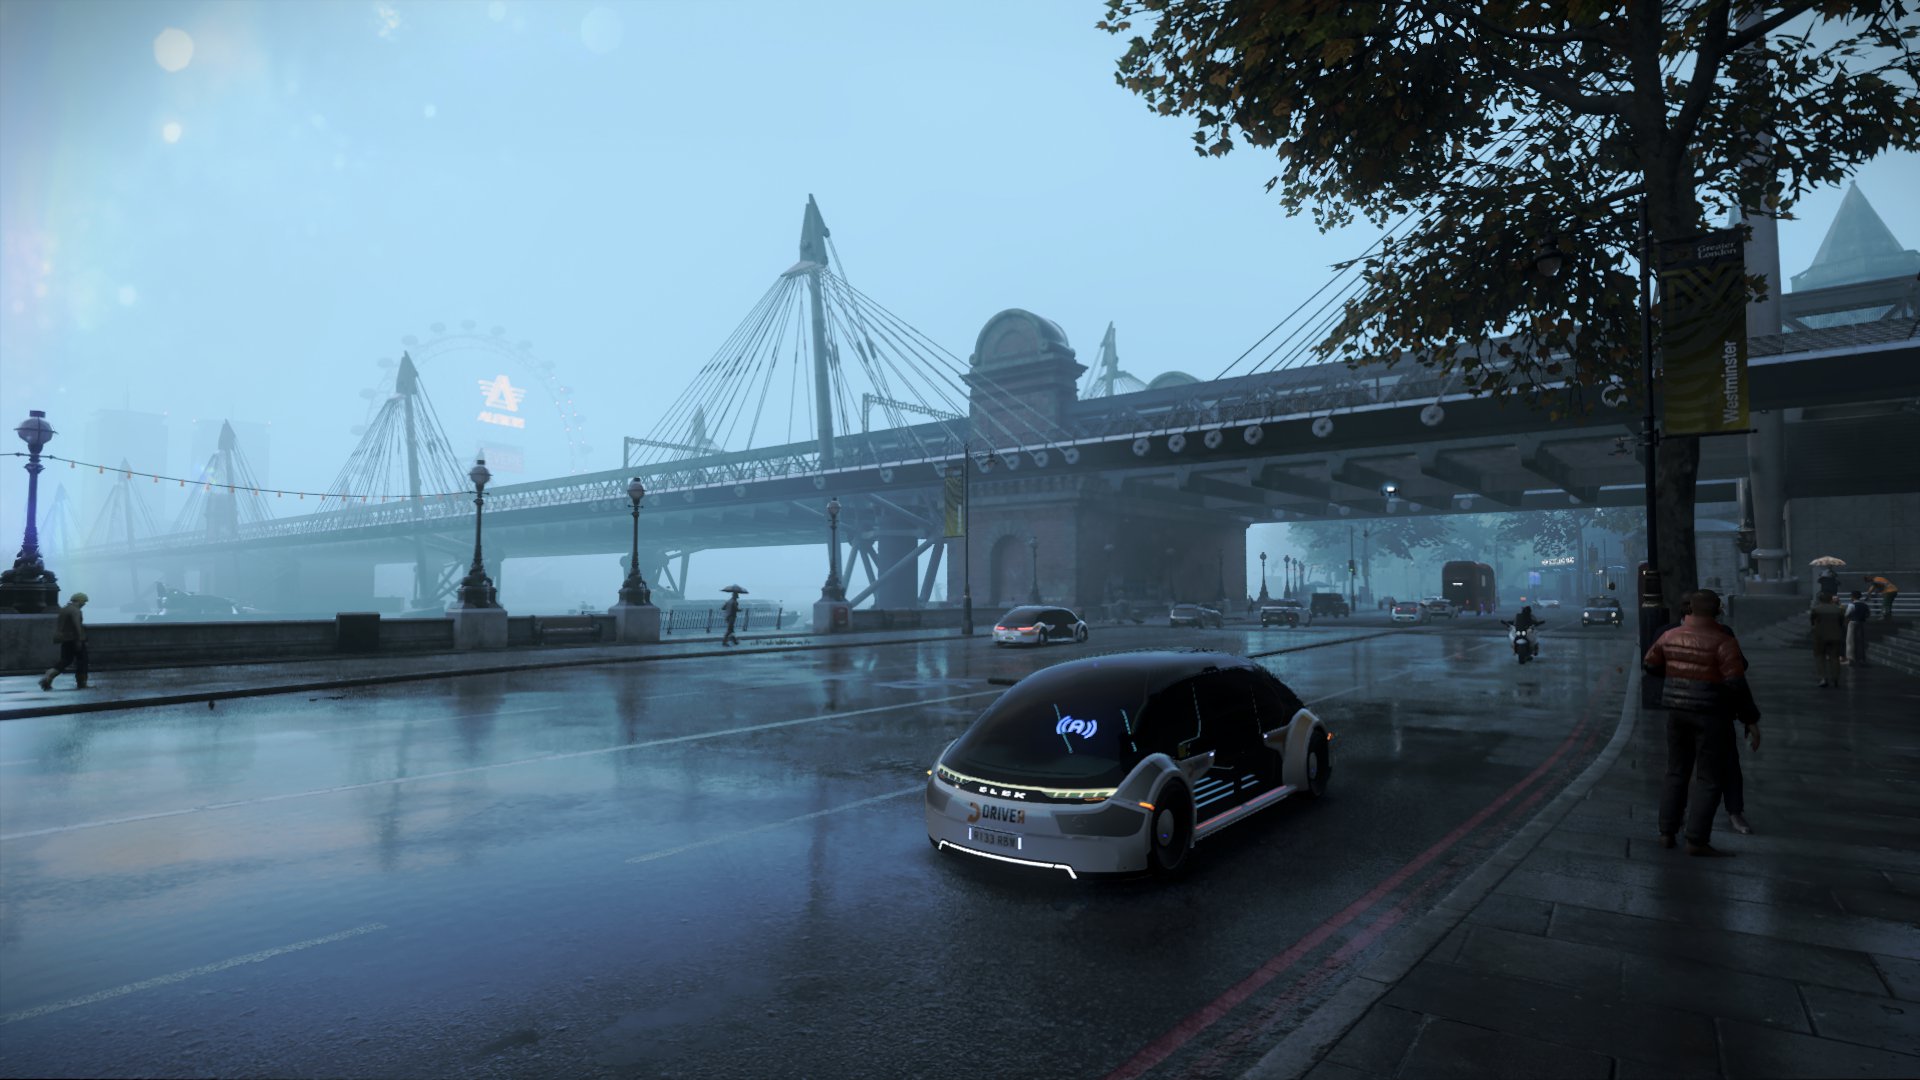 下雨时的伦敦桥